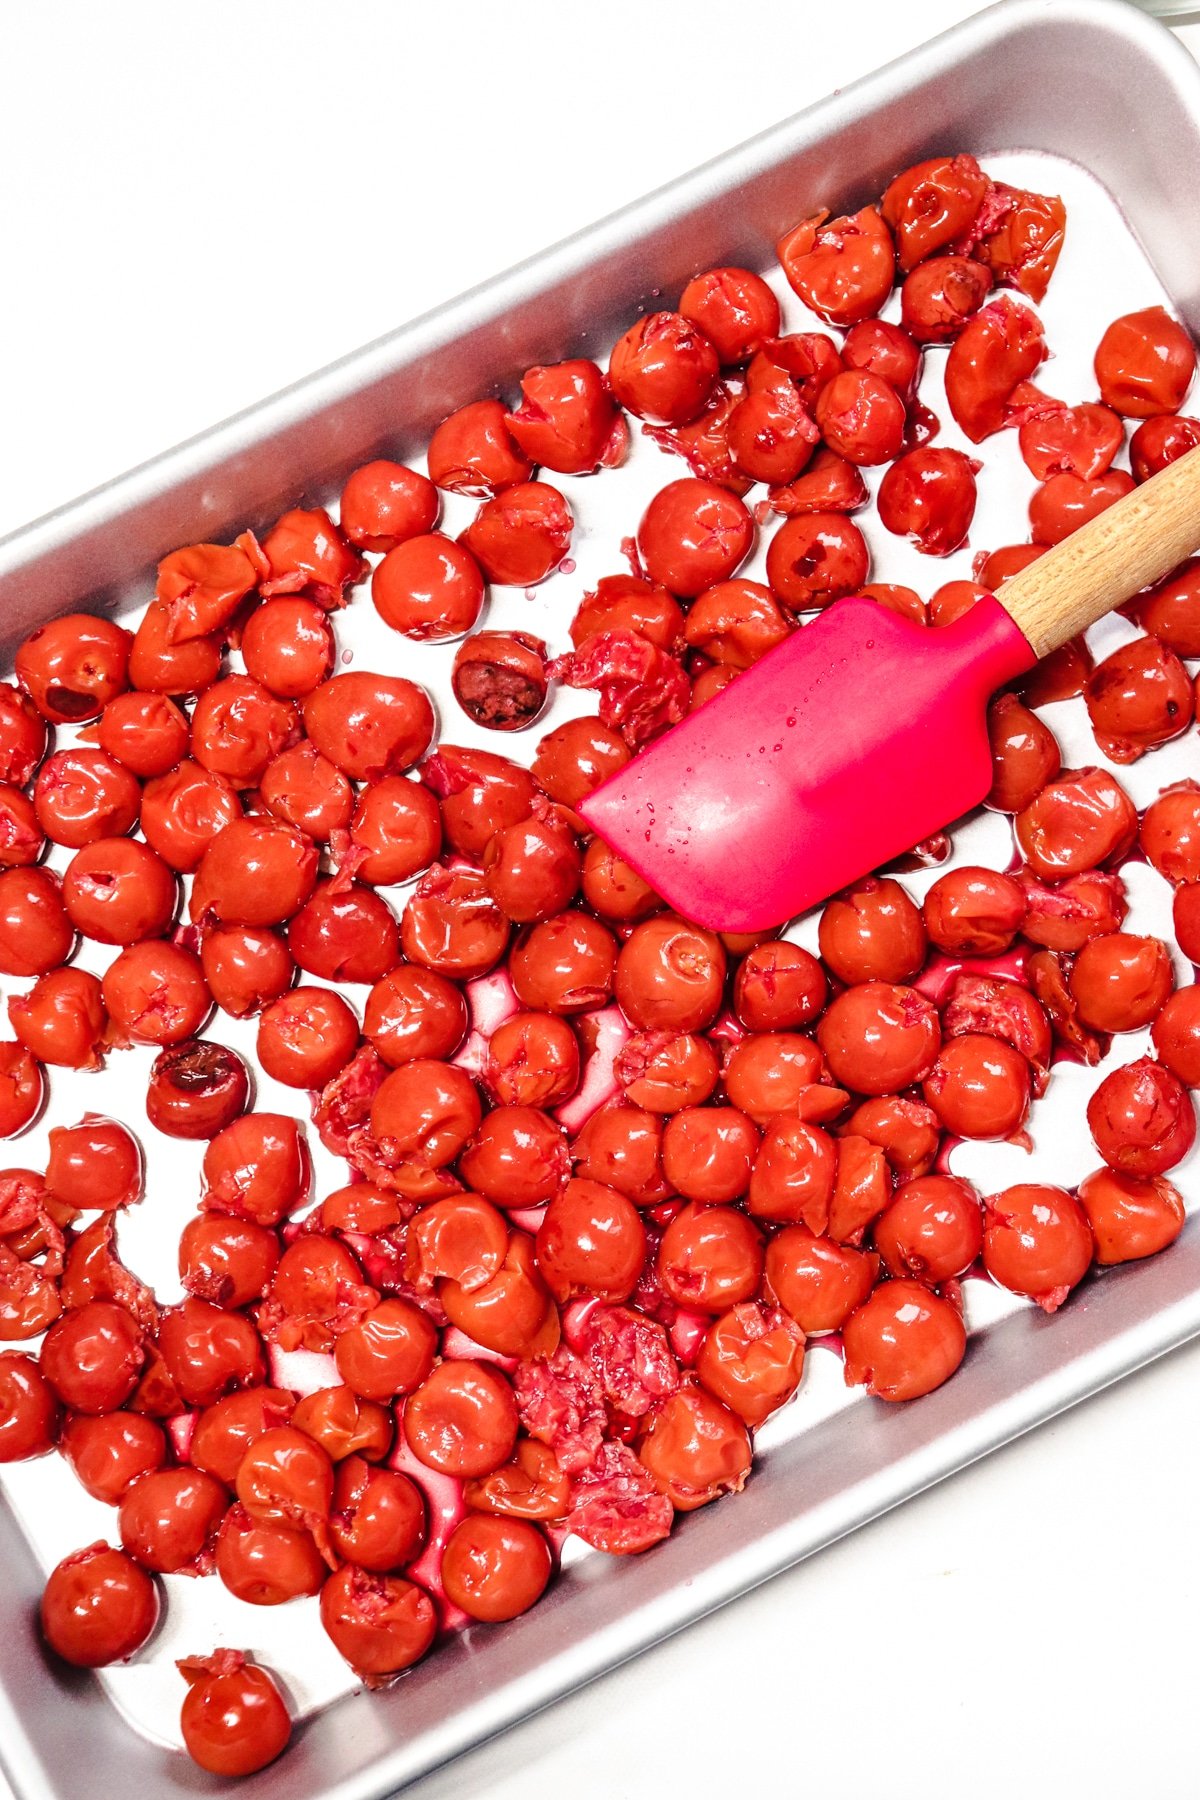 Cherries drained in pan